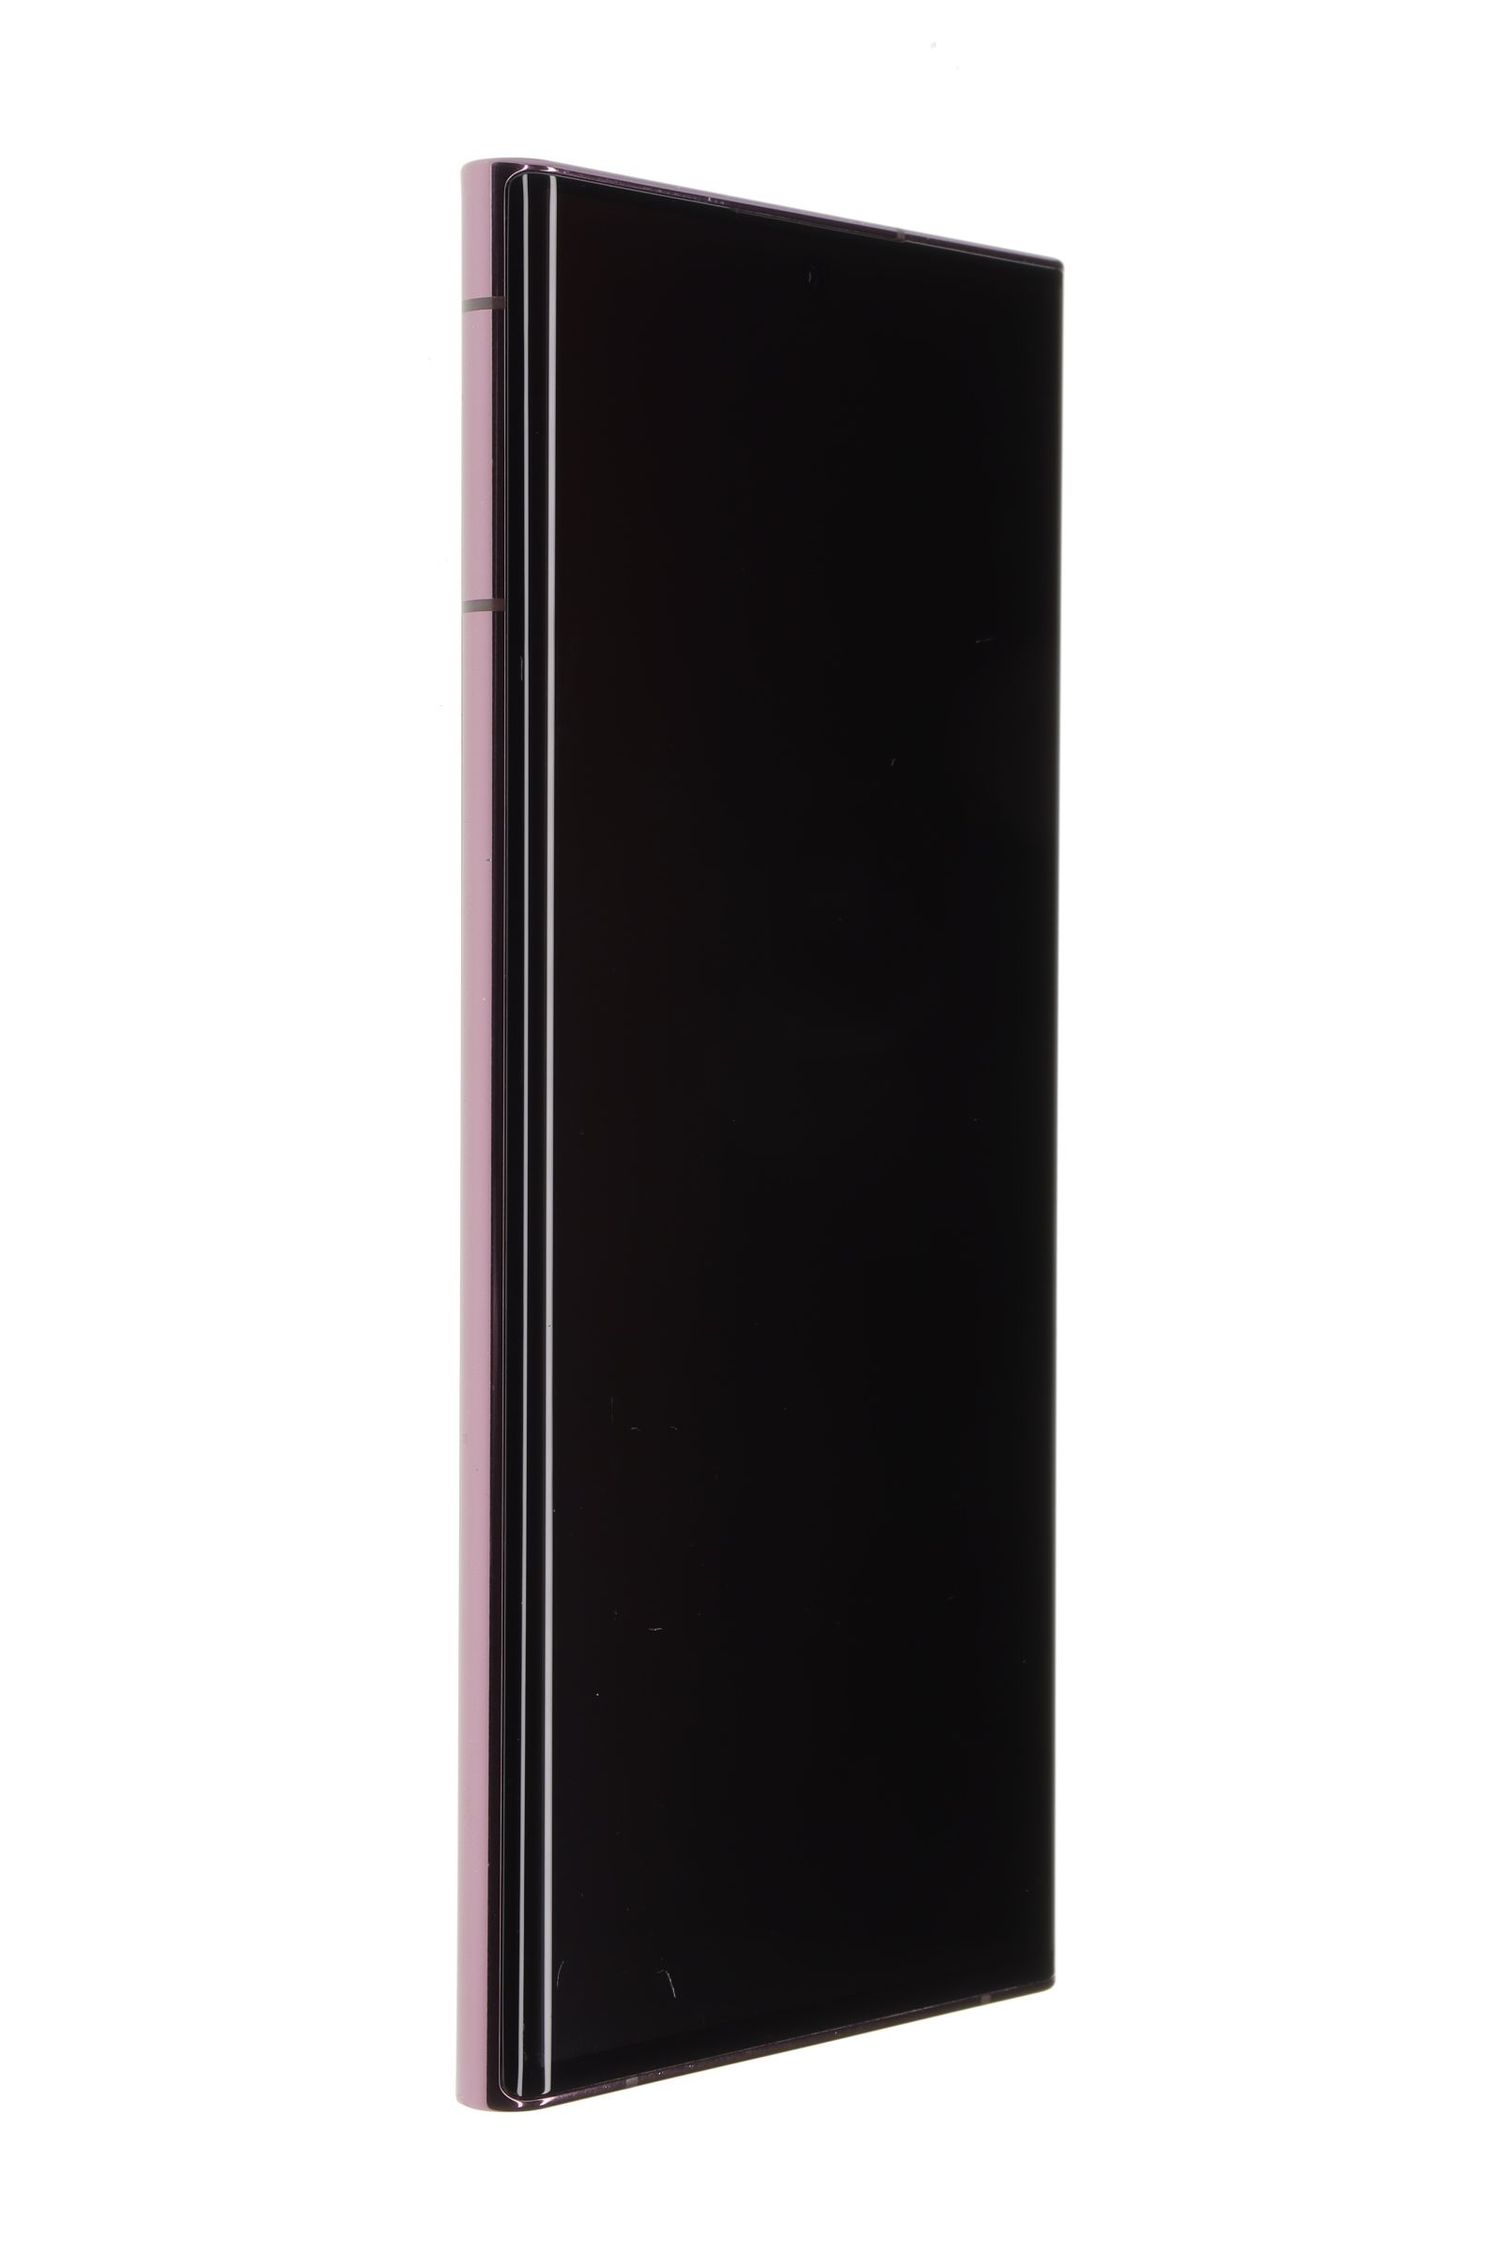 Κινητό τηλέφωνο Samsung Galaxy S22 Ultra 5G Dual Sim, Burgundy, 256 GB, Foarte Bun